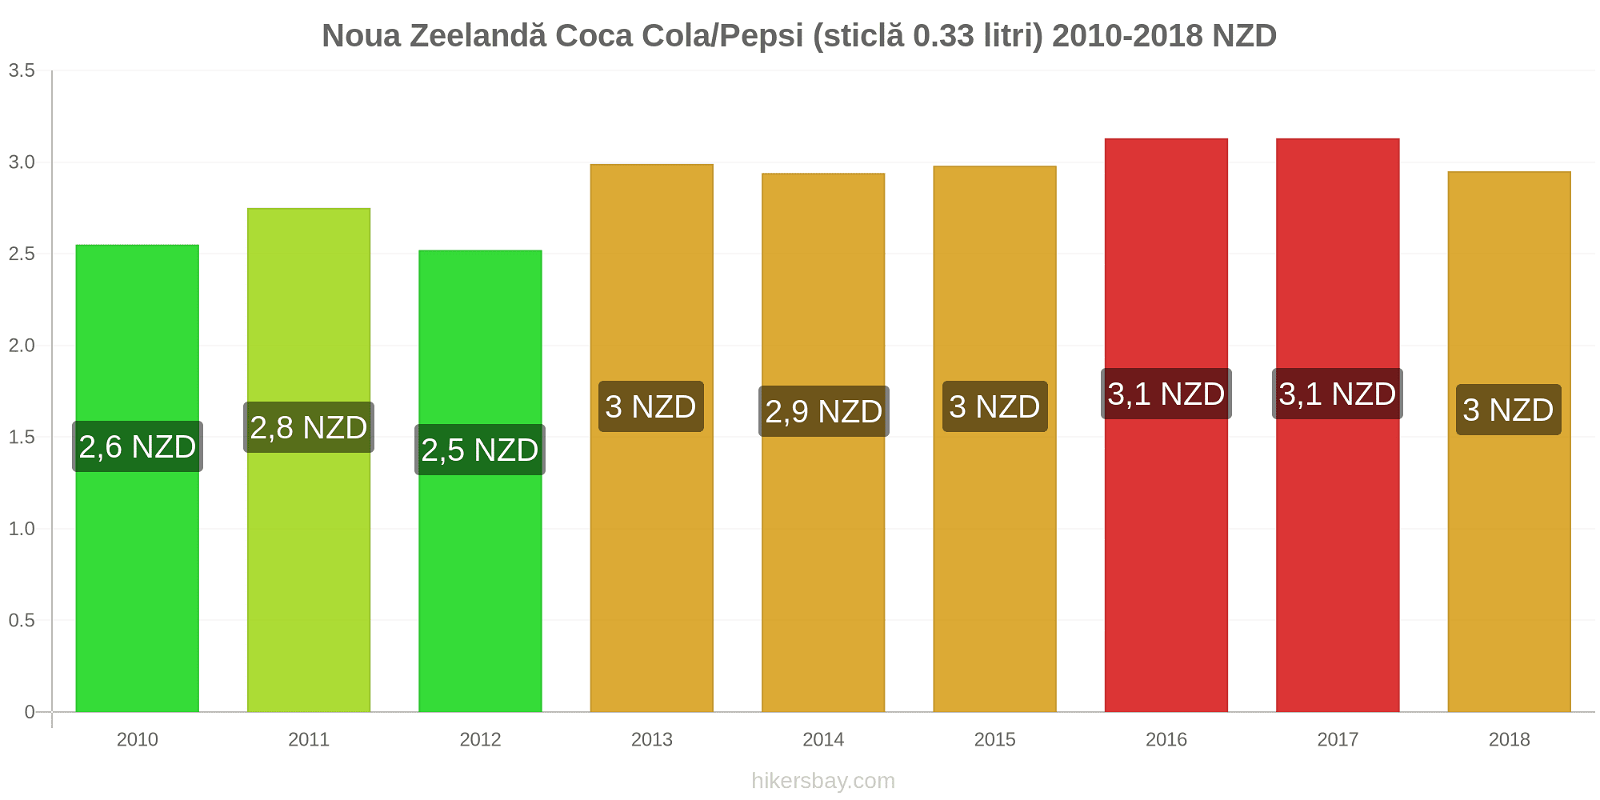 Noua Zeelandă schimbări de prețuri Coca-Cola/Pepsi (sticlă de 0.33 litri) hikersbay.com